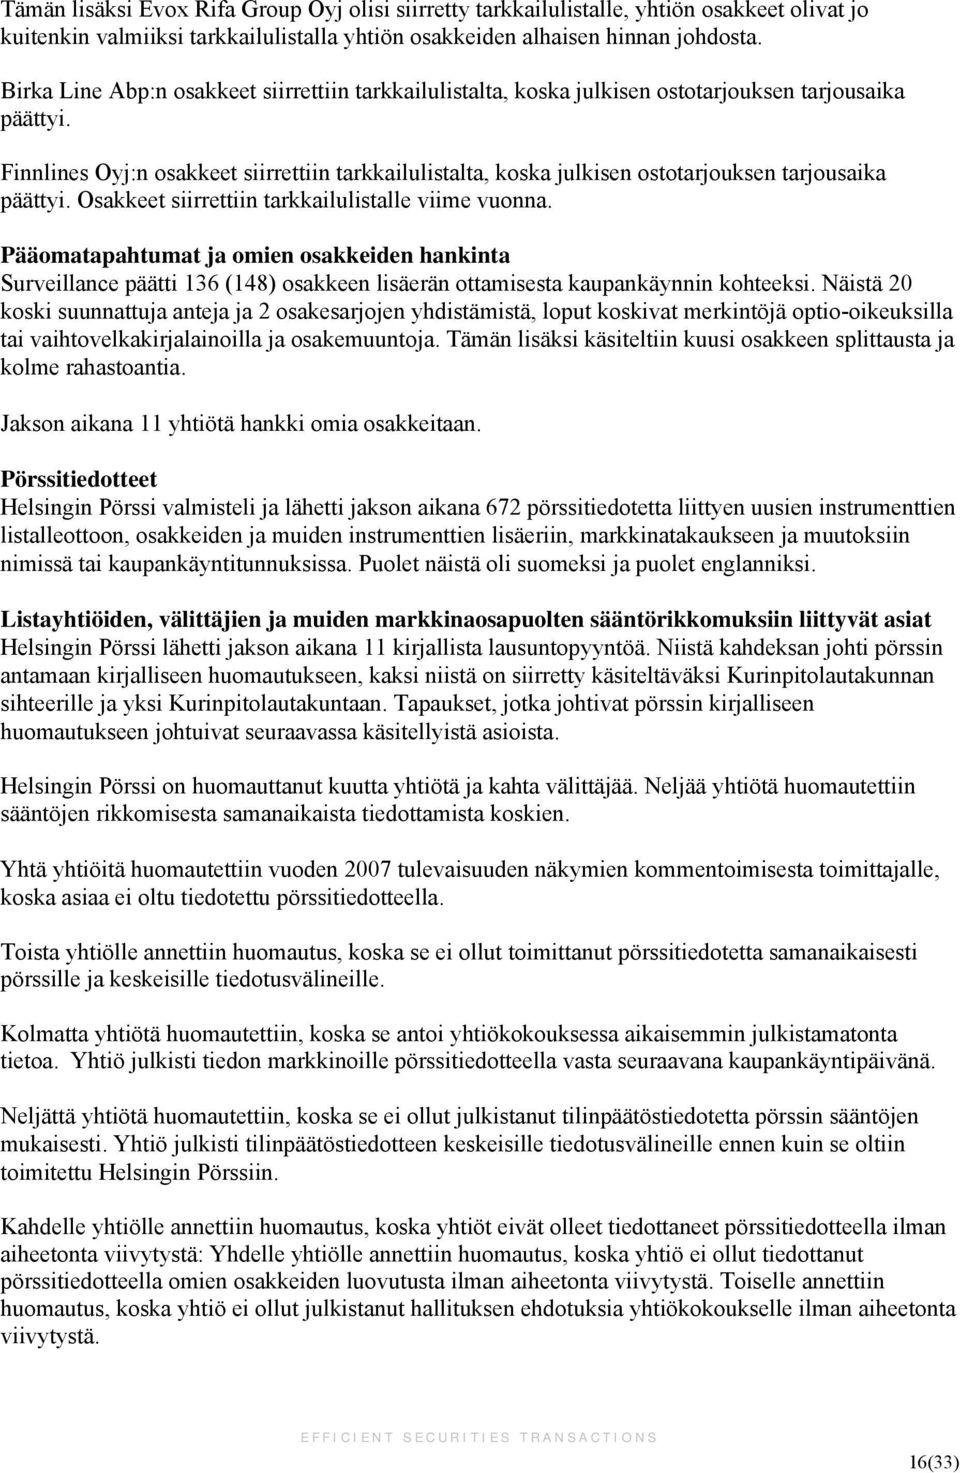 Finnlines Oyj:n osakkeet siirrettiin tarkkailulistalta, koska julkisen ostotarjouksen tarjousaika päättyi. Osakkeet siirrettiin tarkkailulistalle viime vuonna.